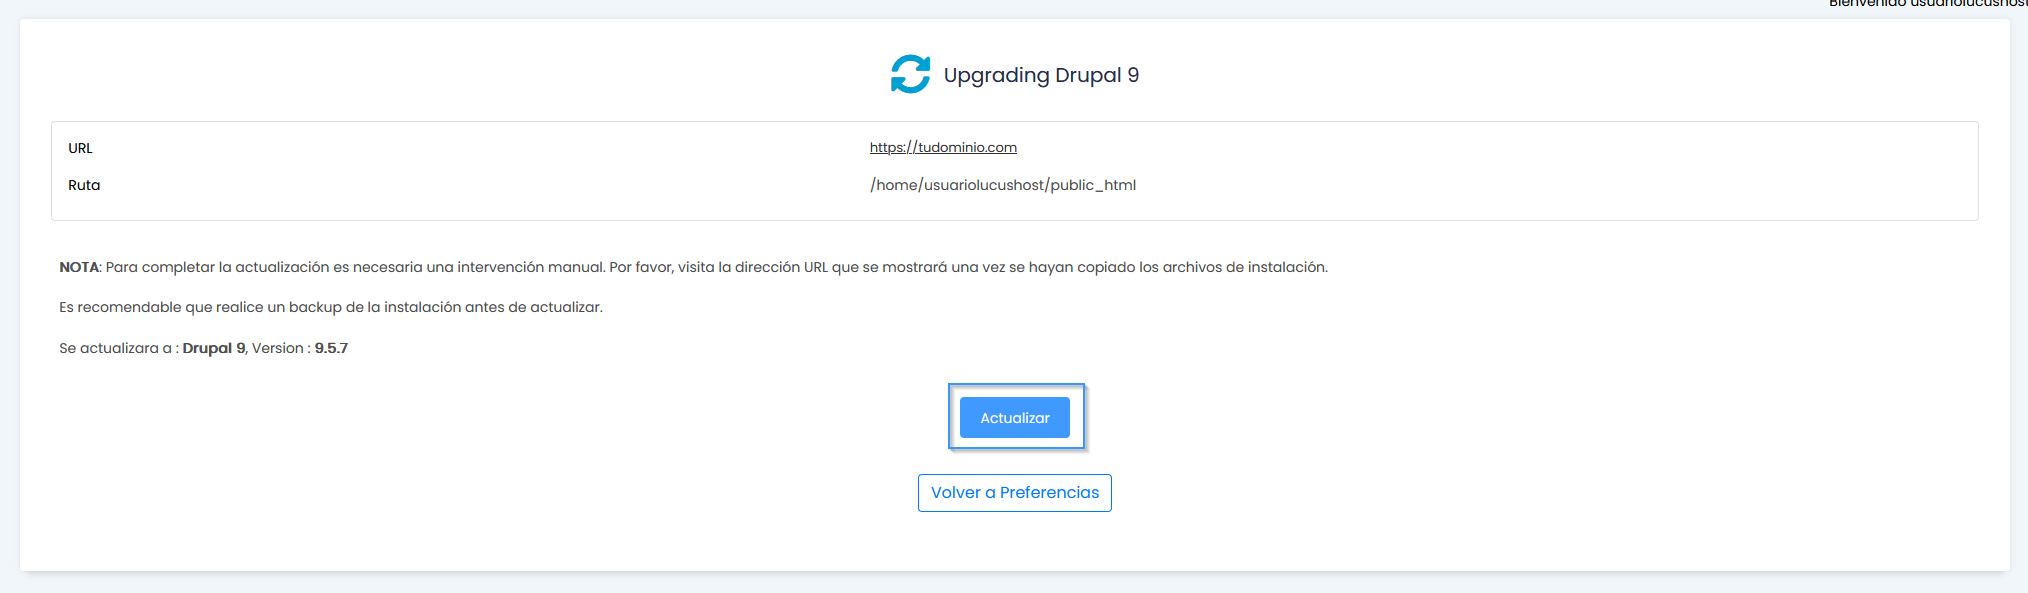 Ejecutar la actualización de Drupal con Softaculous